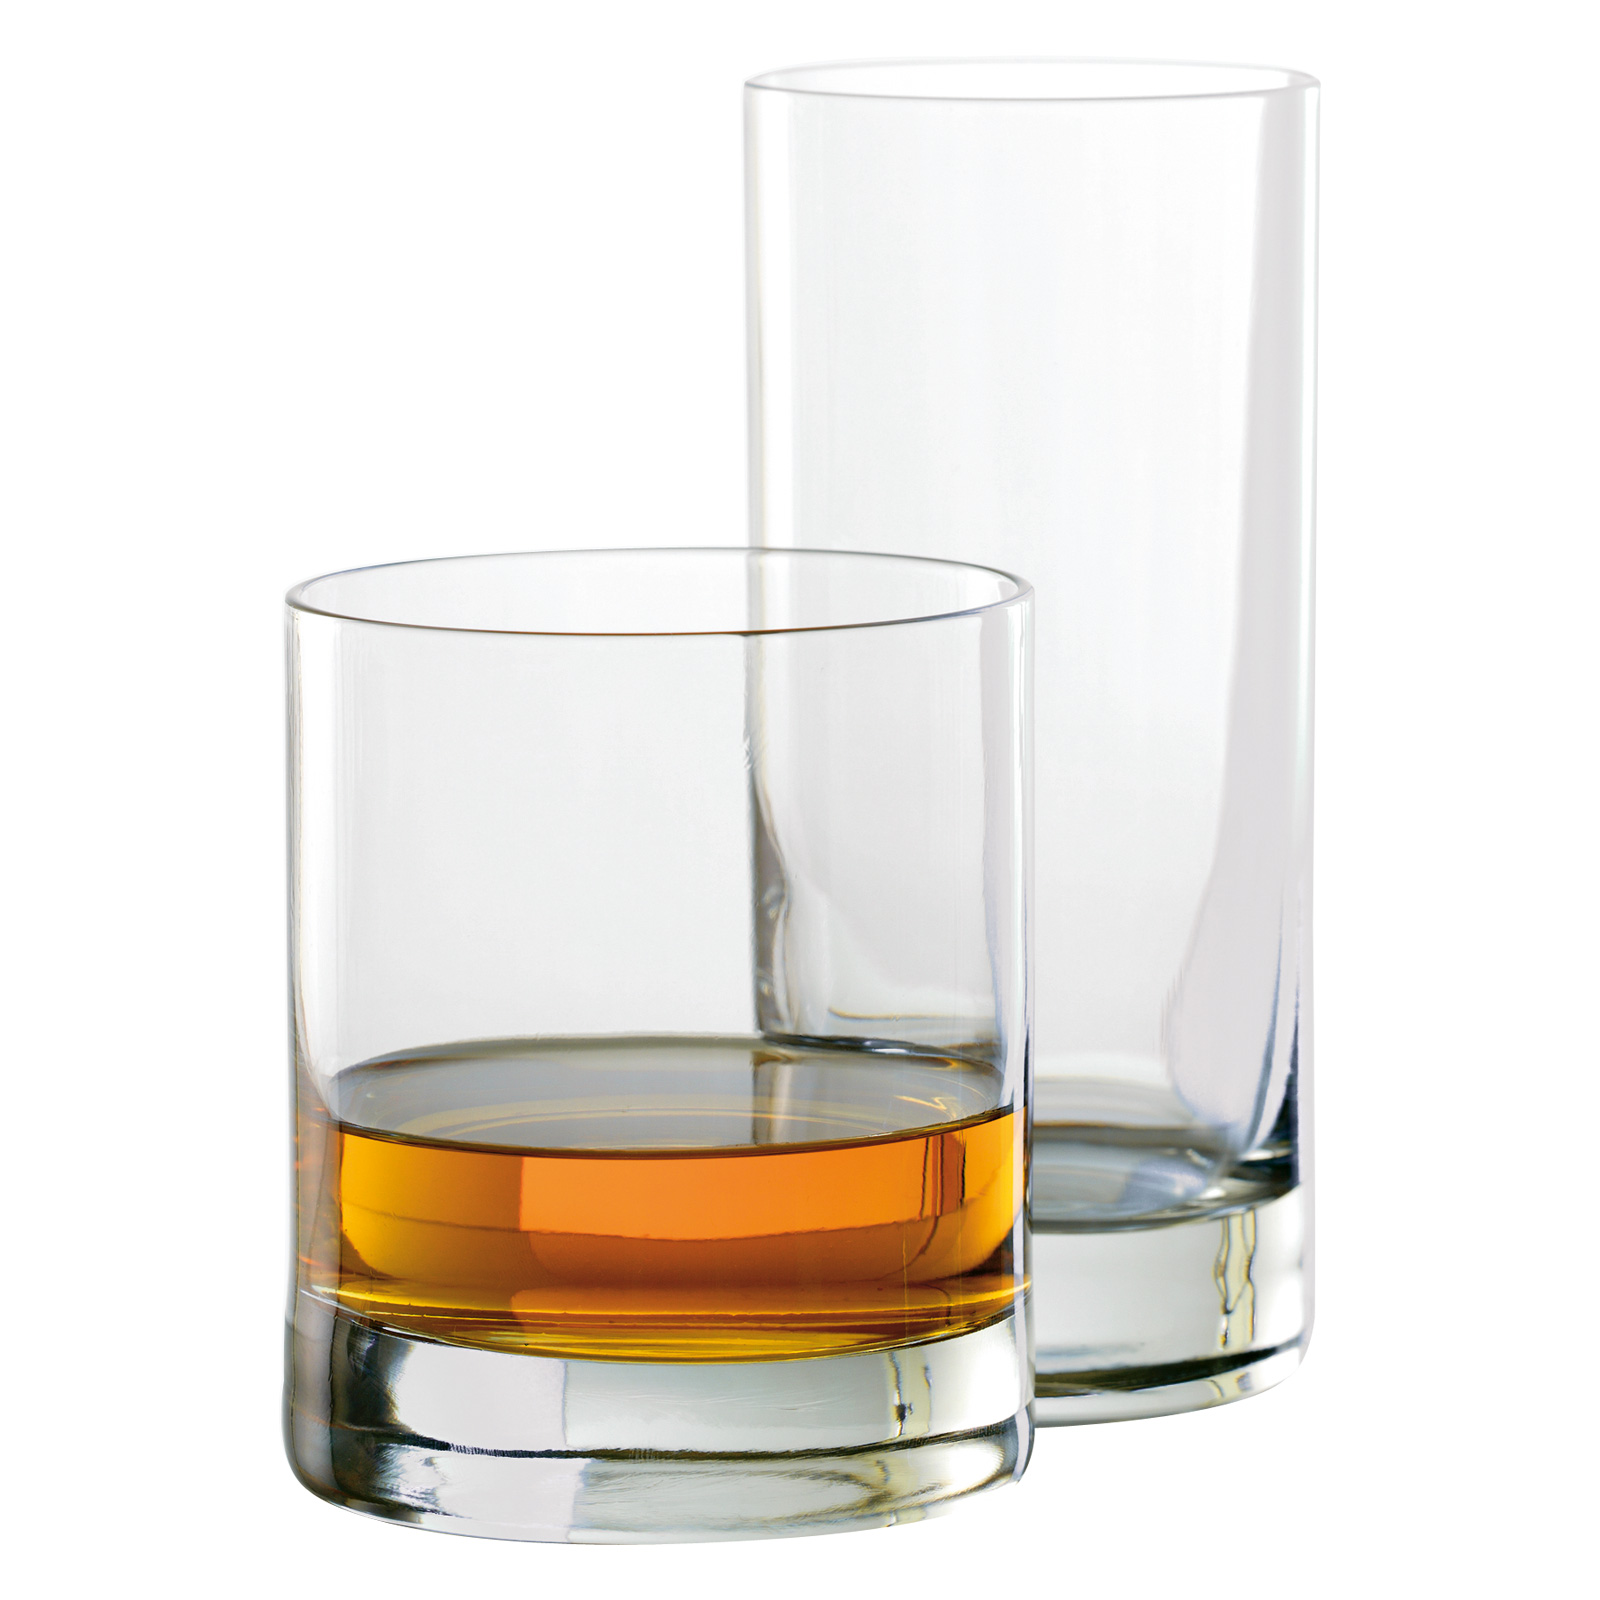 Cốc Uống Rượu Stölzle New York Bar Rocks-Tumbler Glass 320ml - Thiết Kế Cạnh Đứng, Không Có Quai - Tối Giản, Sang Trọng, Bền Bỉ - Giúp Bạn Thưởng Thức Ly Rượu Yêu Thích Sau Giờ Làm Một Cách Trọn Vẹn Nhất